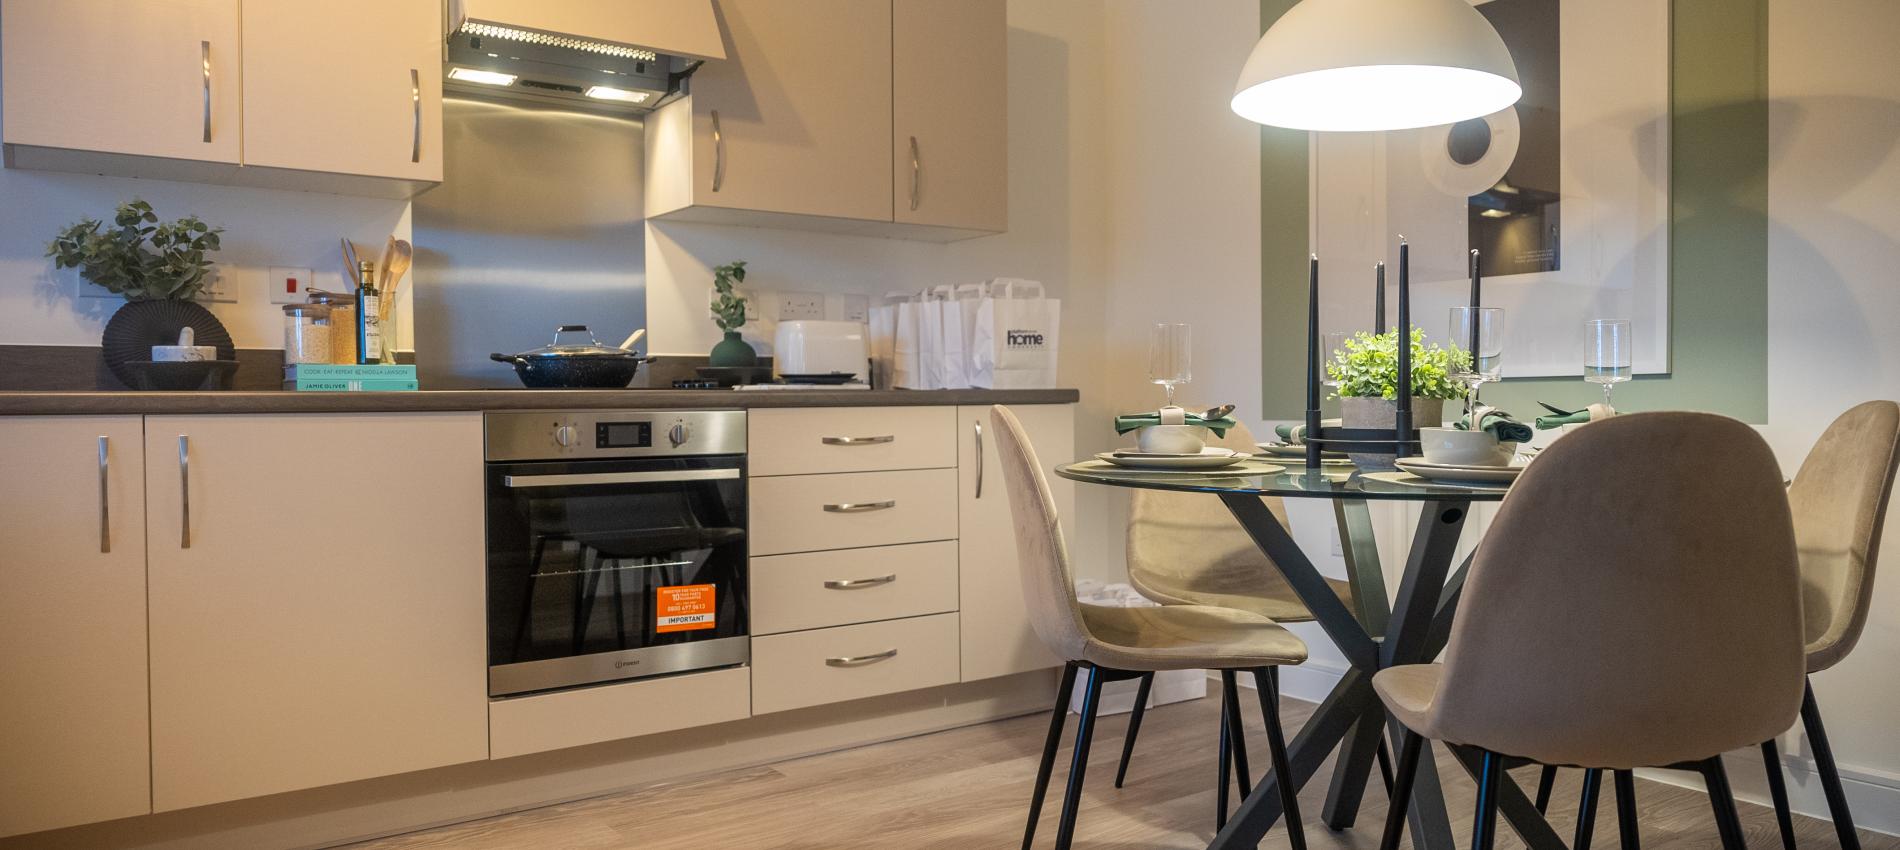 Platform Home Ownership Show Home - Kitchen/Diner